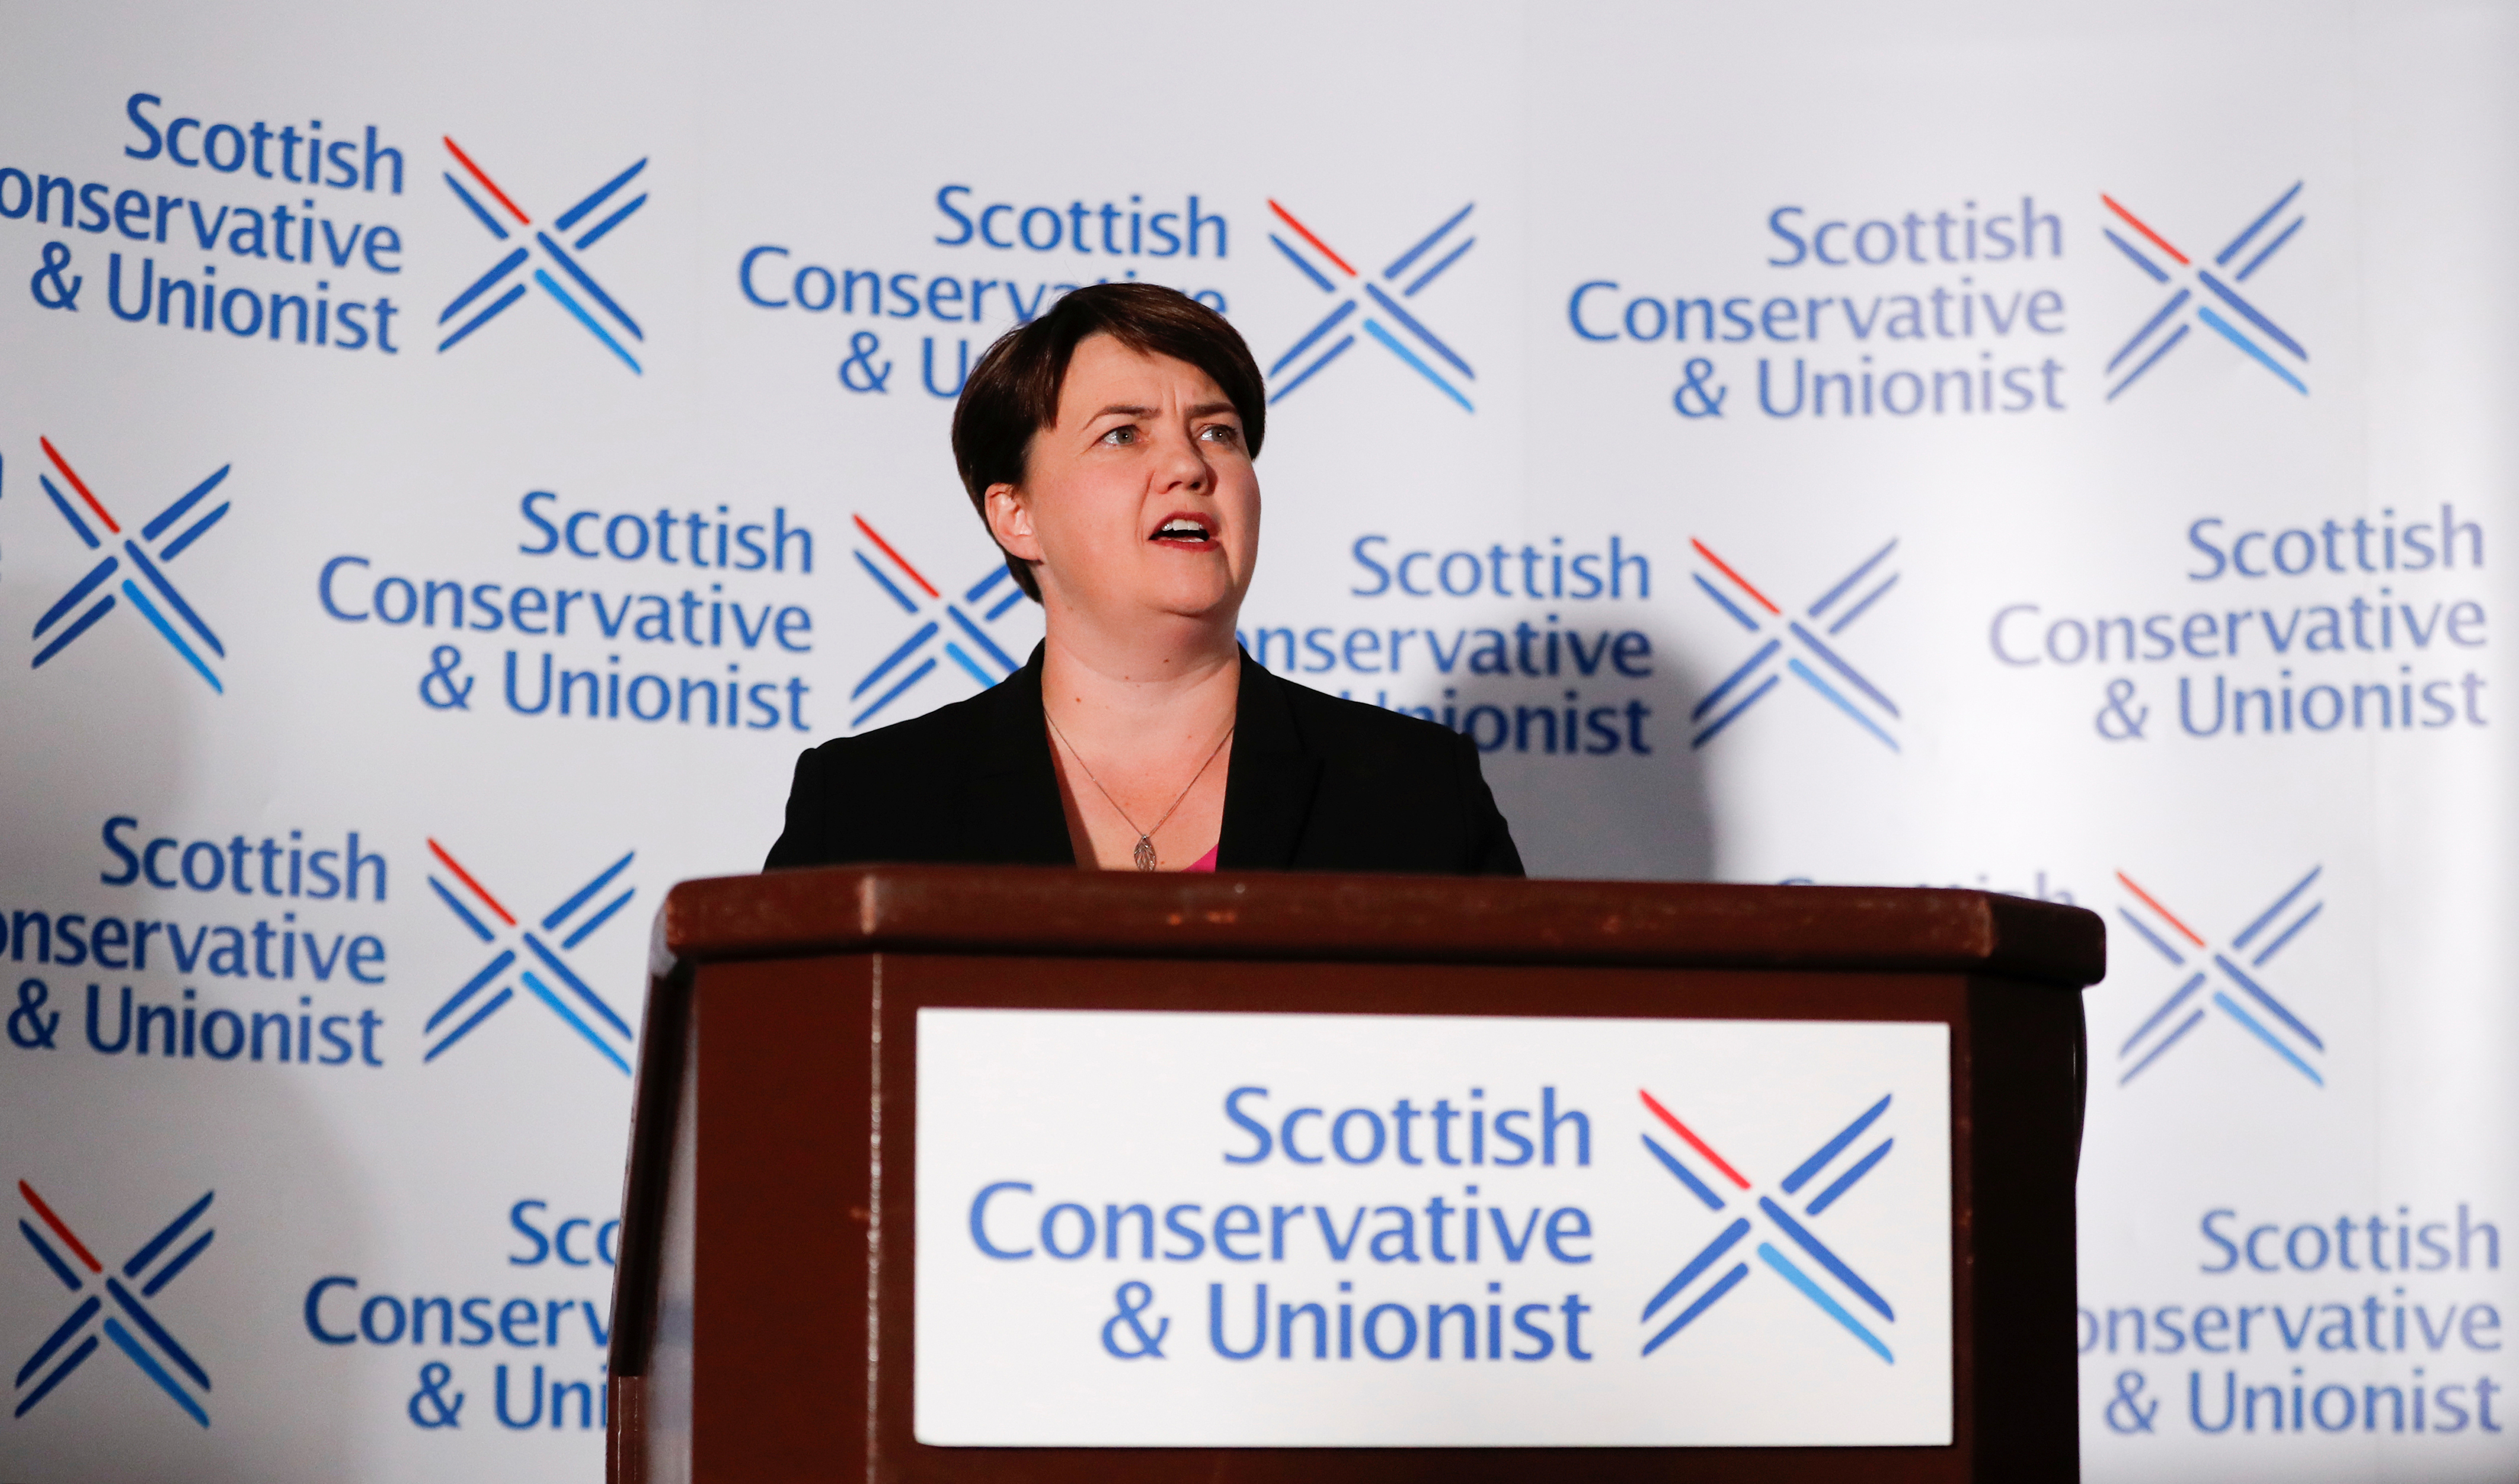 Dimiteix la líder dels conservadors escocesos després de la suspensió del Parlament